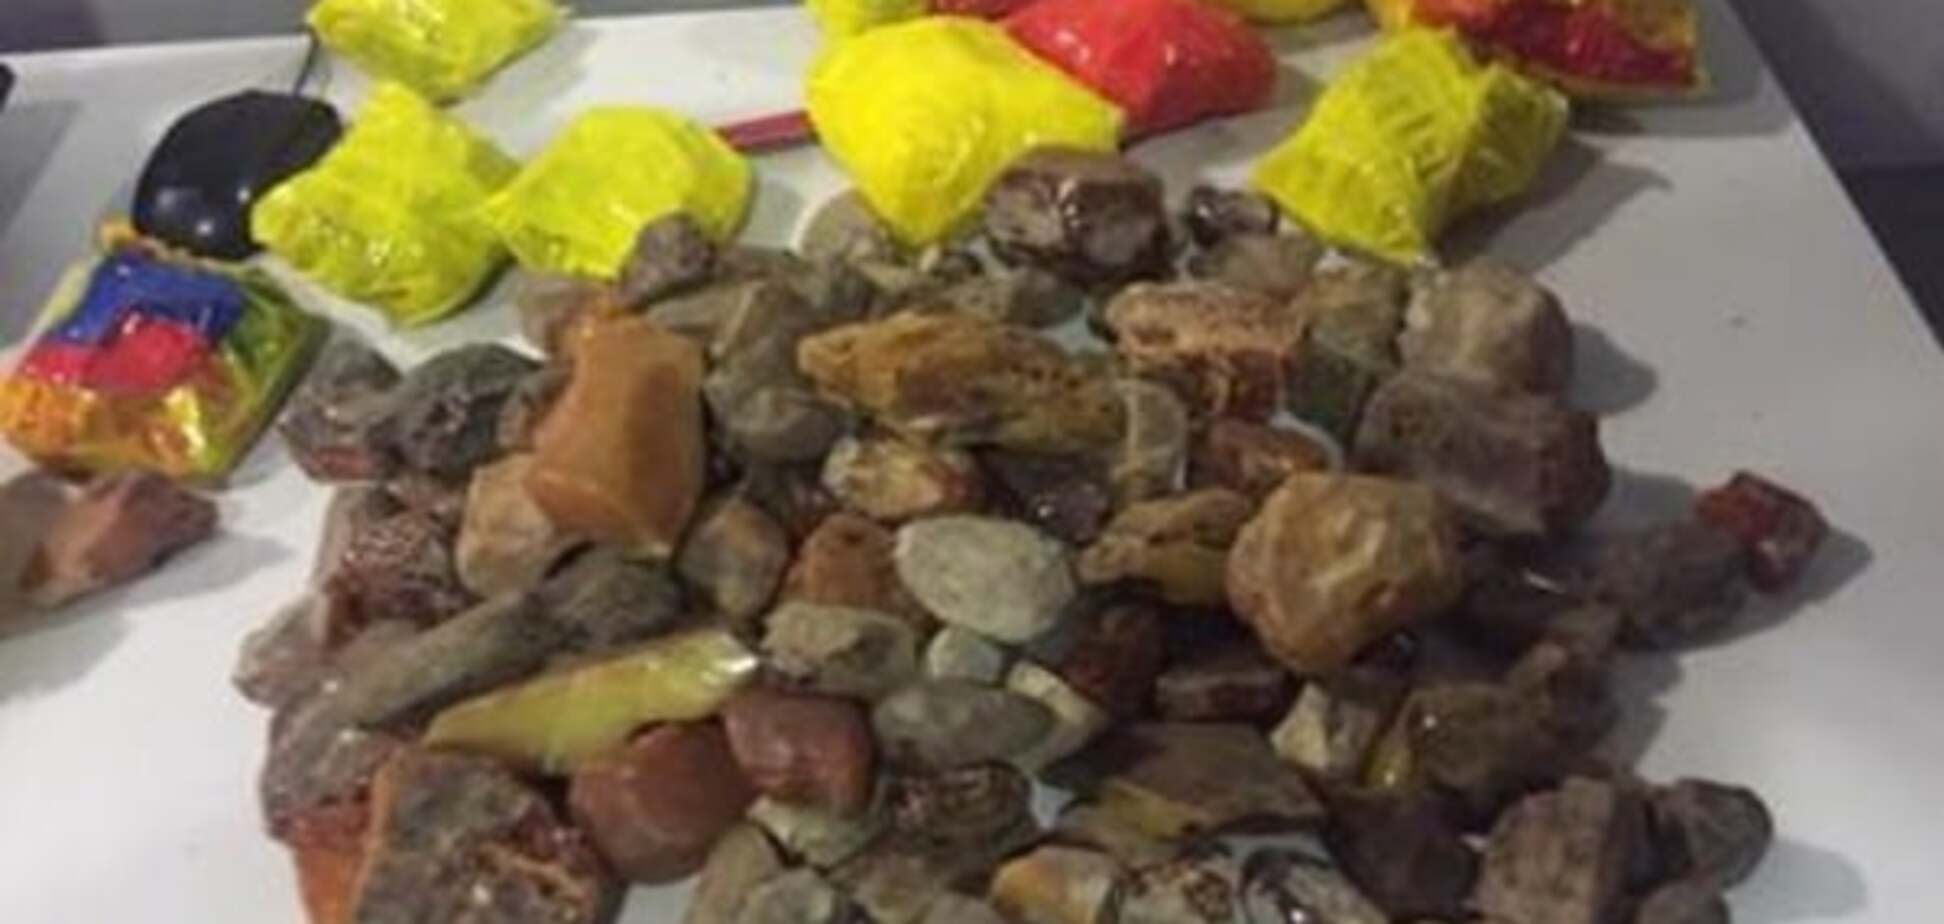 В 'Борисполе' поймали контрабандиста с янтарем на 600 тыс. грн: опубликованы фото